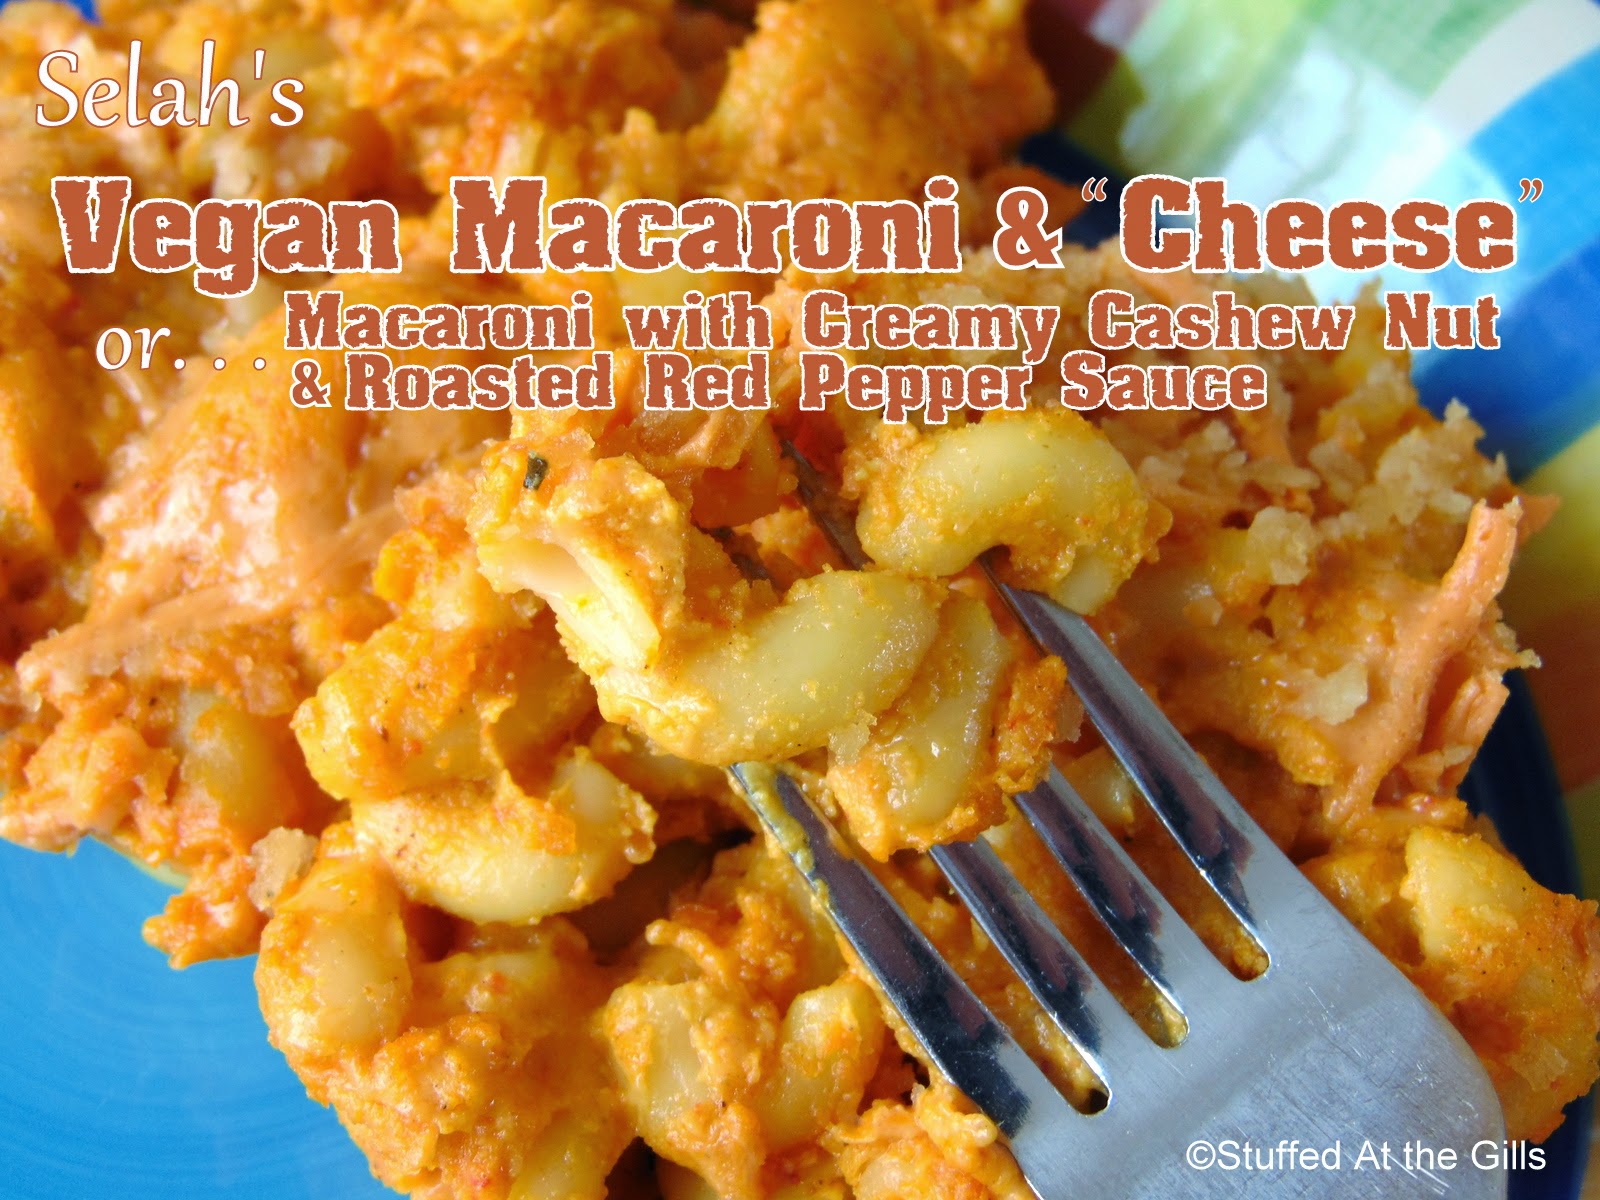 Selah's Vegan Macaroni & "Cheese"